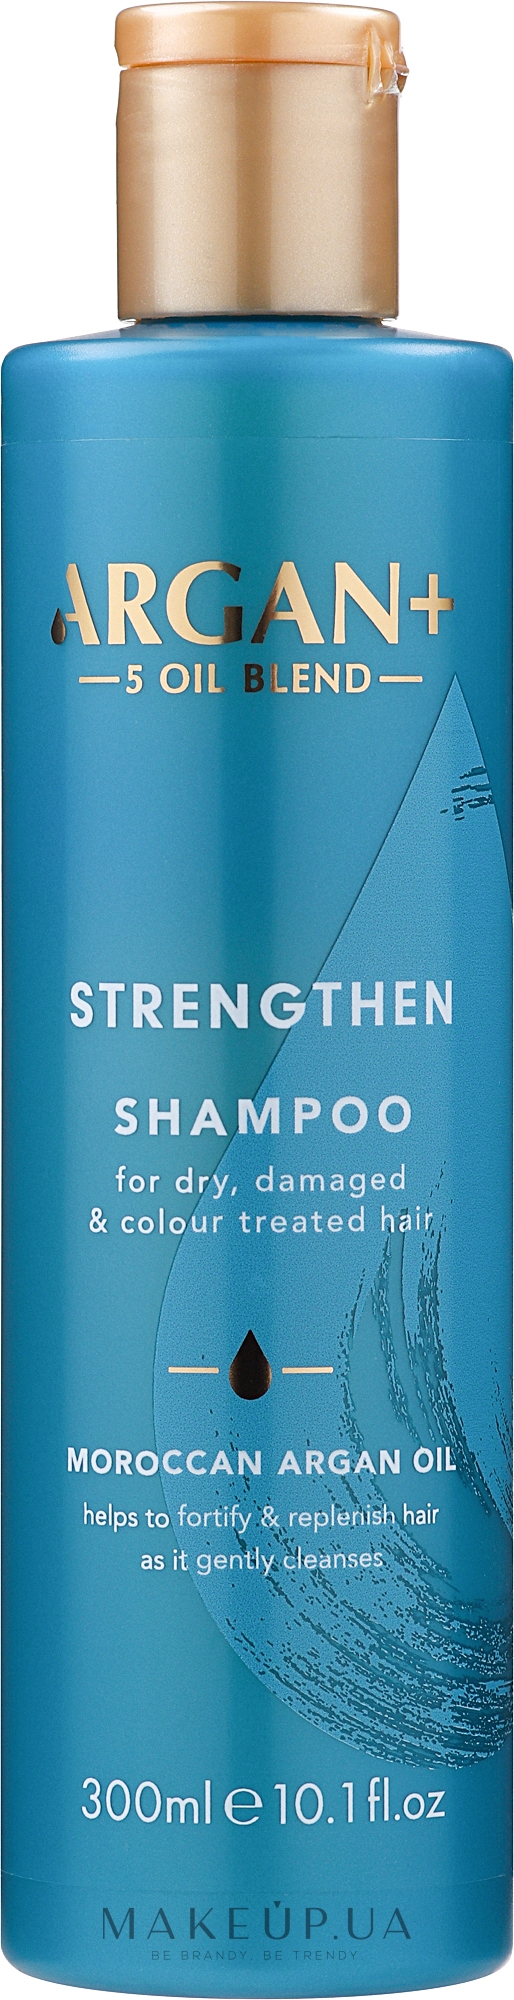 Шампунь для сухого, ослабленого й фарбованого волосся - Argan+ Strengthen Shampoo Moroccan Argan Oil — фото 300ml